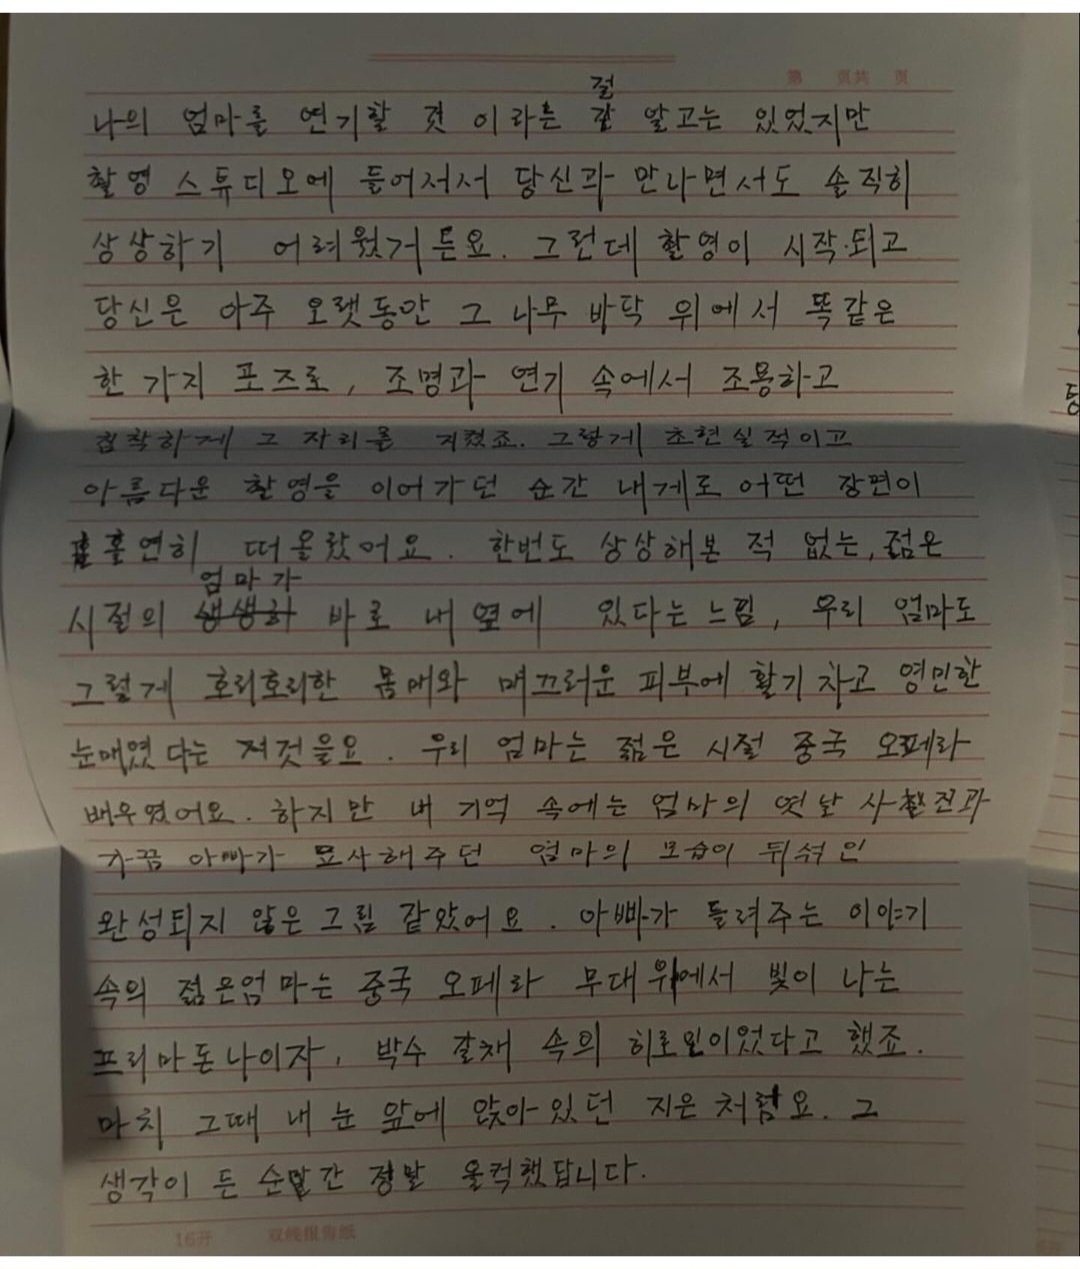 탕웨이가 아이유에게 써준 손편지